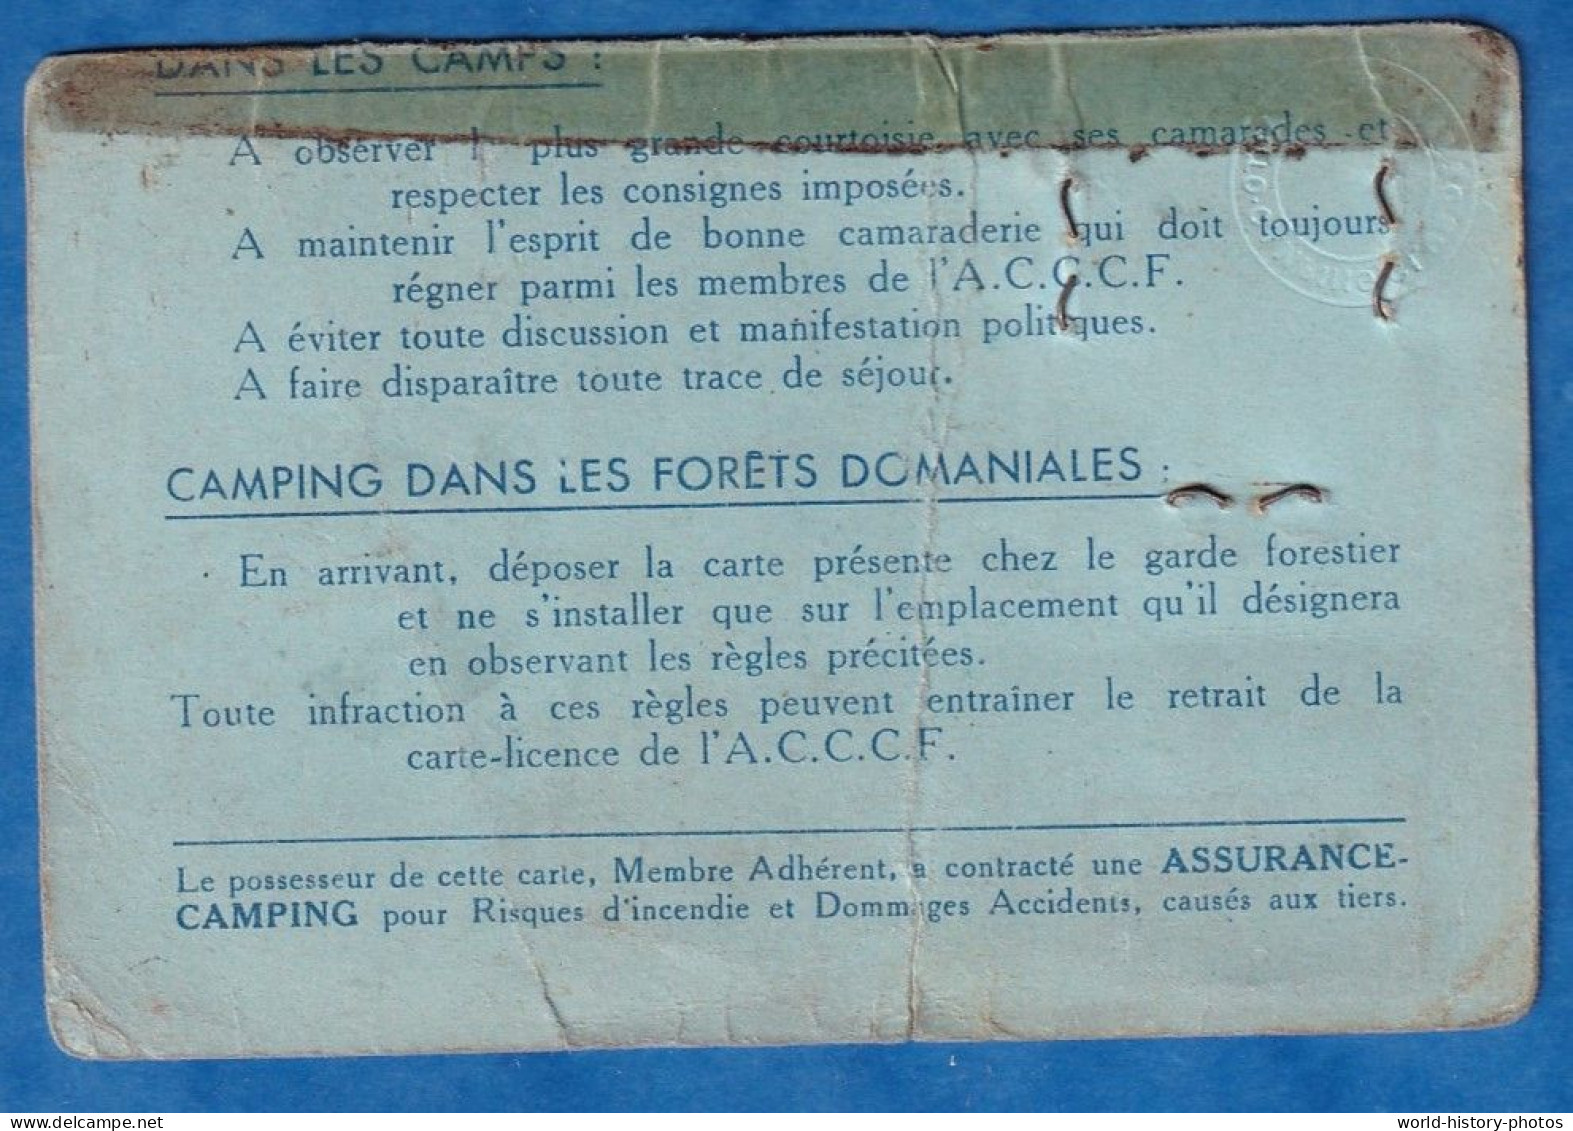 Carte Ancienne De Membre " Provisoire " - Auto Camping Et Caraving Club De France - Alfred BLANCHARD à Compiègne - Membership Cards